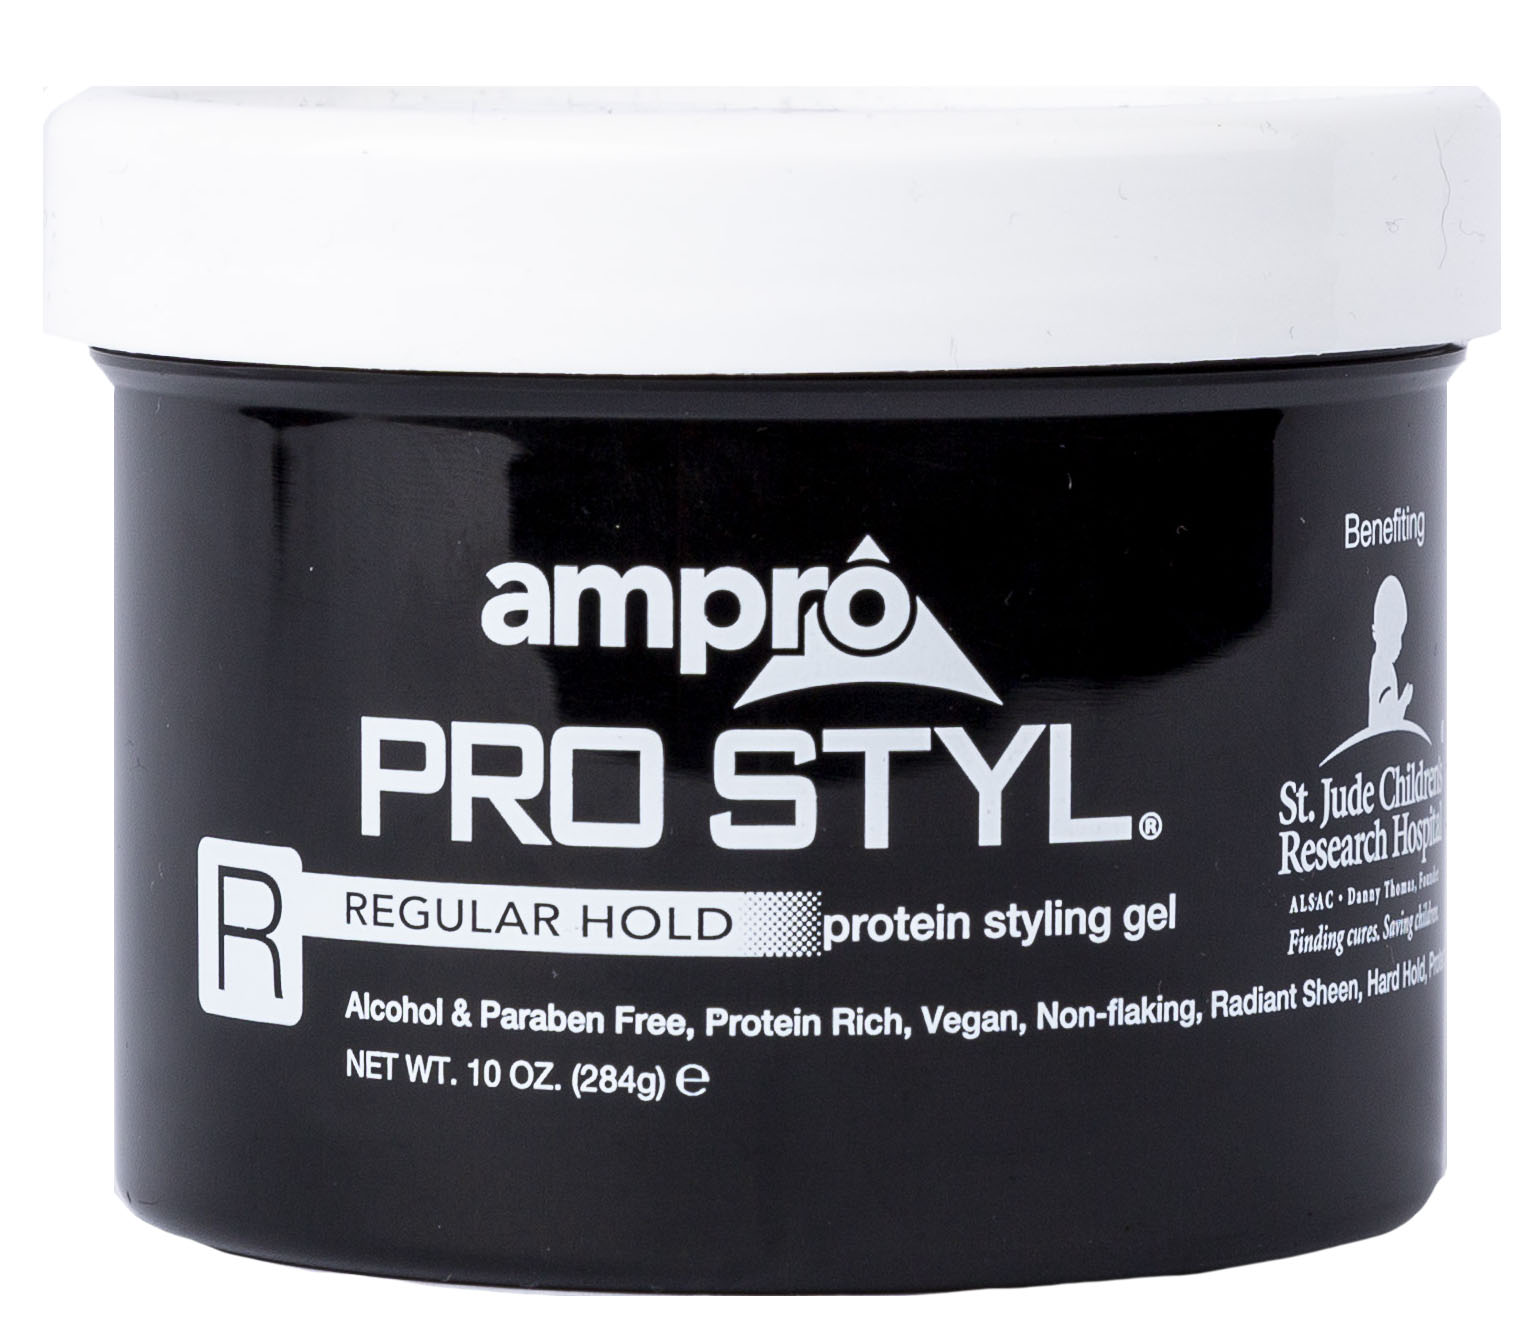 Ampro Pro Styl Regular Hold Protein Styling Gel, 10 oz. Moisturizing, Unisex - image 3 of 6